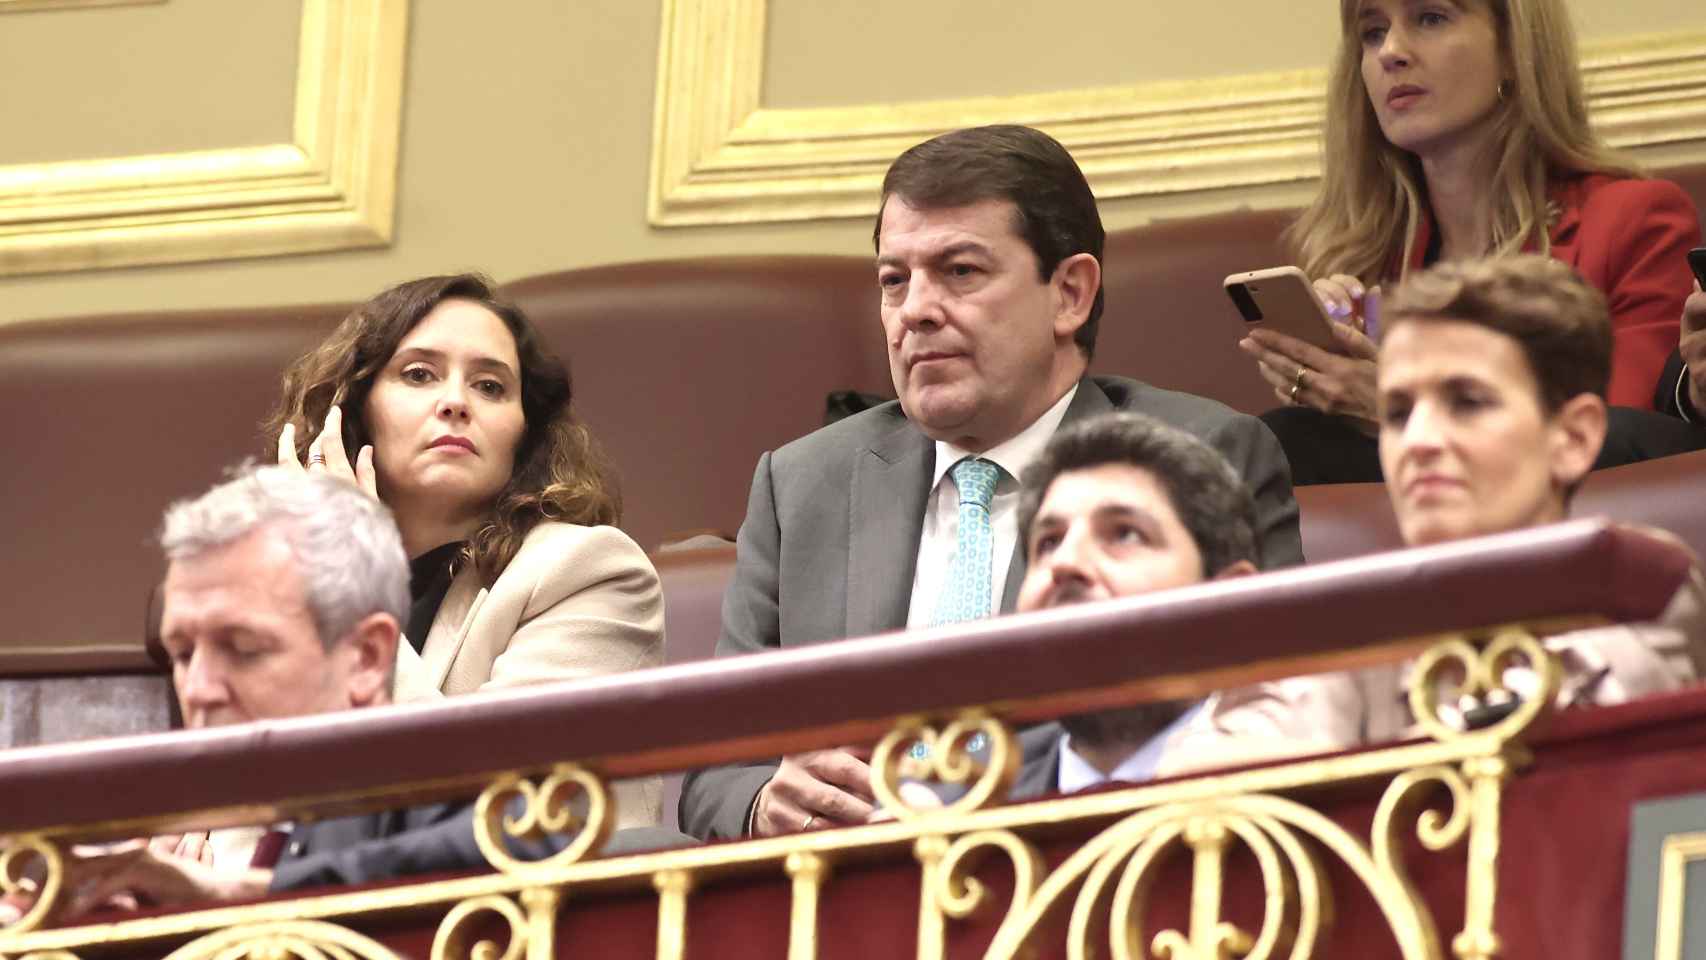 El presidente de la Junta de Castilla y León, Alfonso Fernández Mañueco, asiste a la Sesión Plenaria para la Investidura del presidente del Gobierno de España